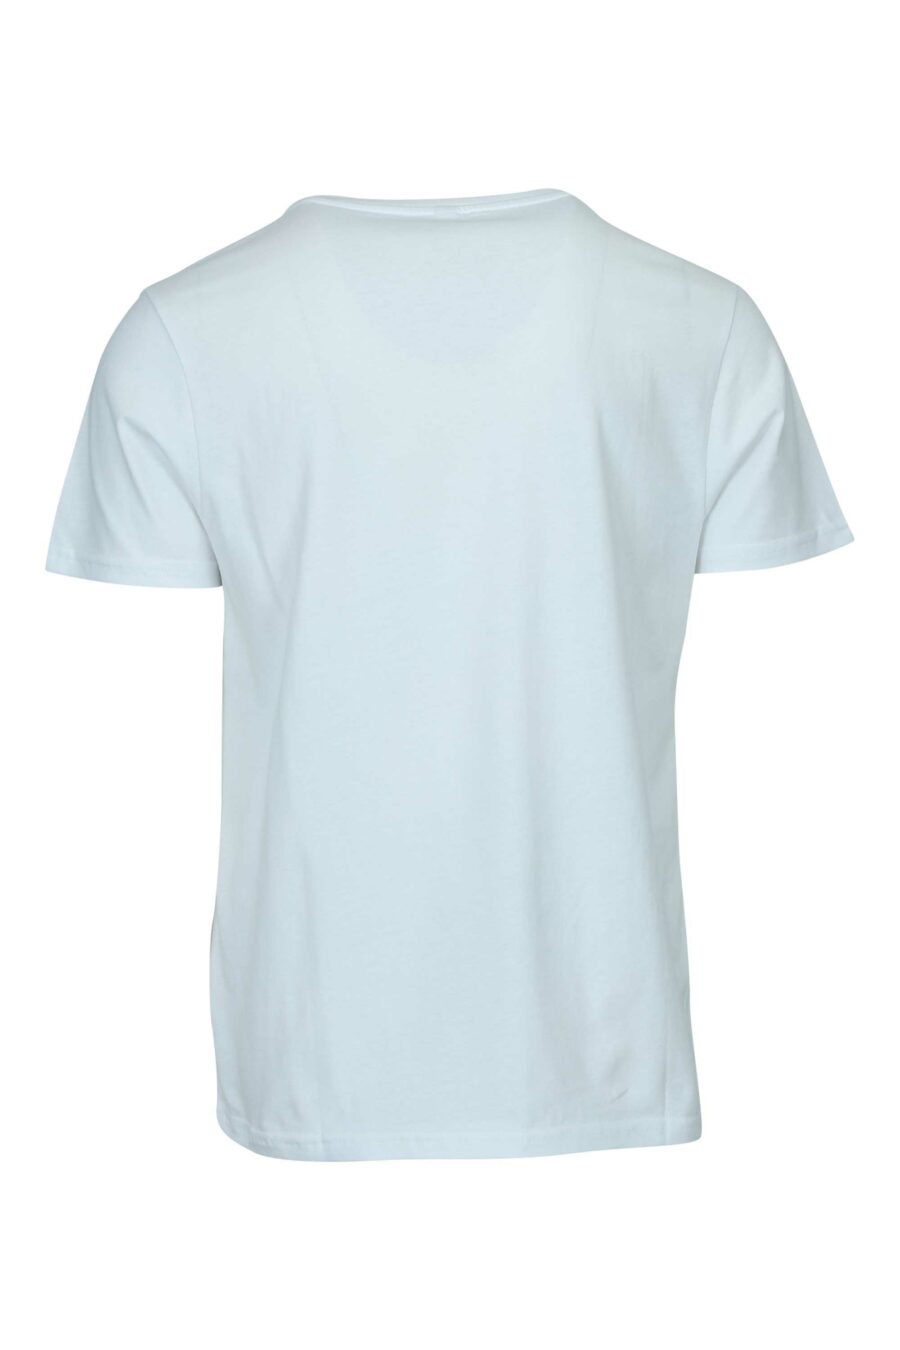 Camiseta blanca con logo monocromático de goma en hombros - 667113671932 1